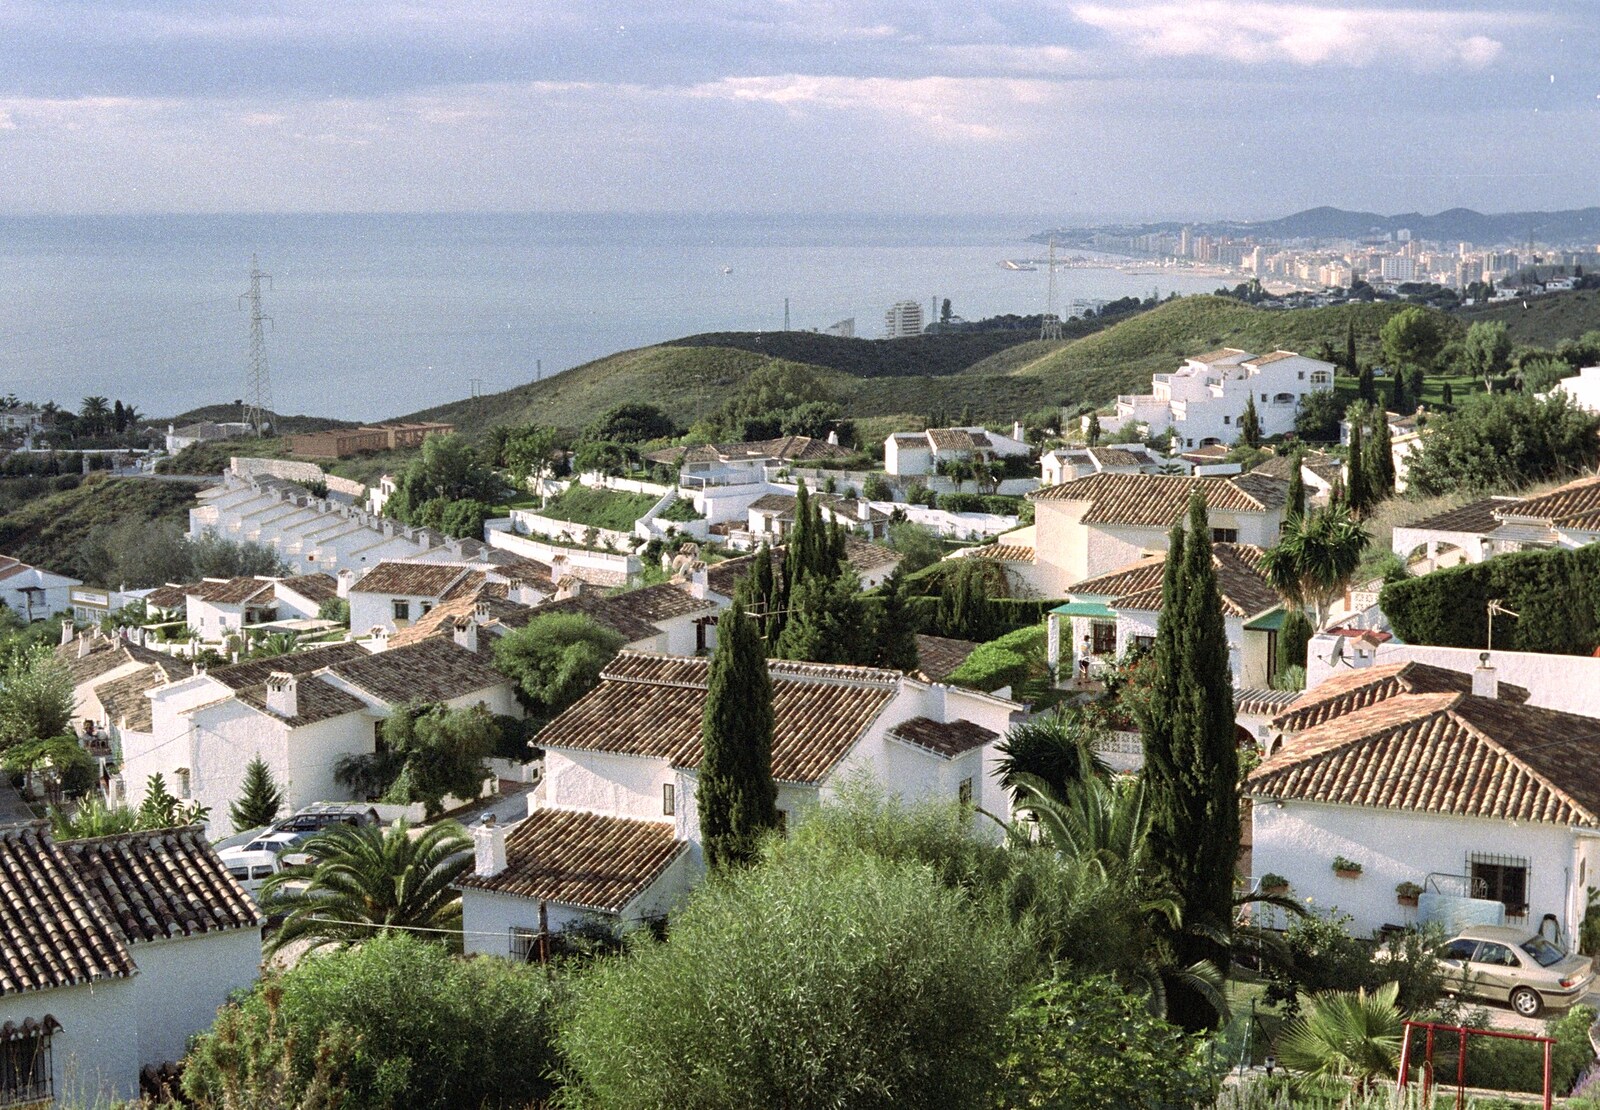 Looking down the coast towards Marbella from The CISU Massive do Malaga, Spain - November 14th 1998